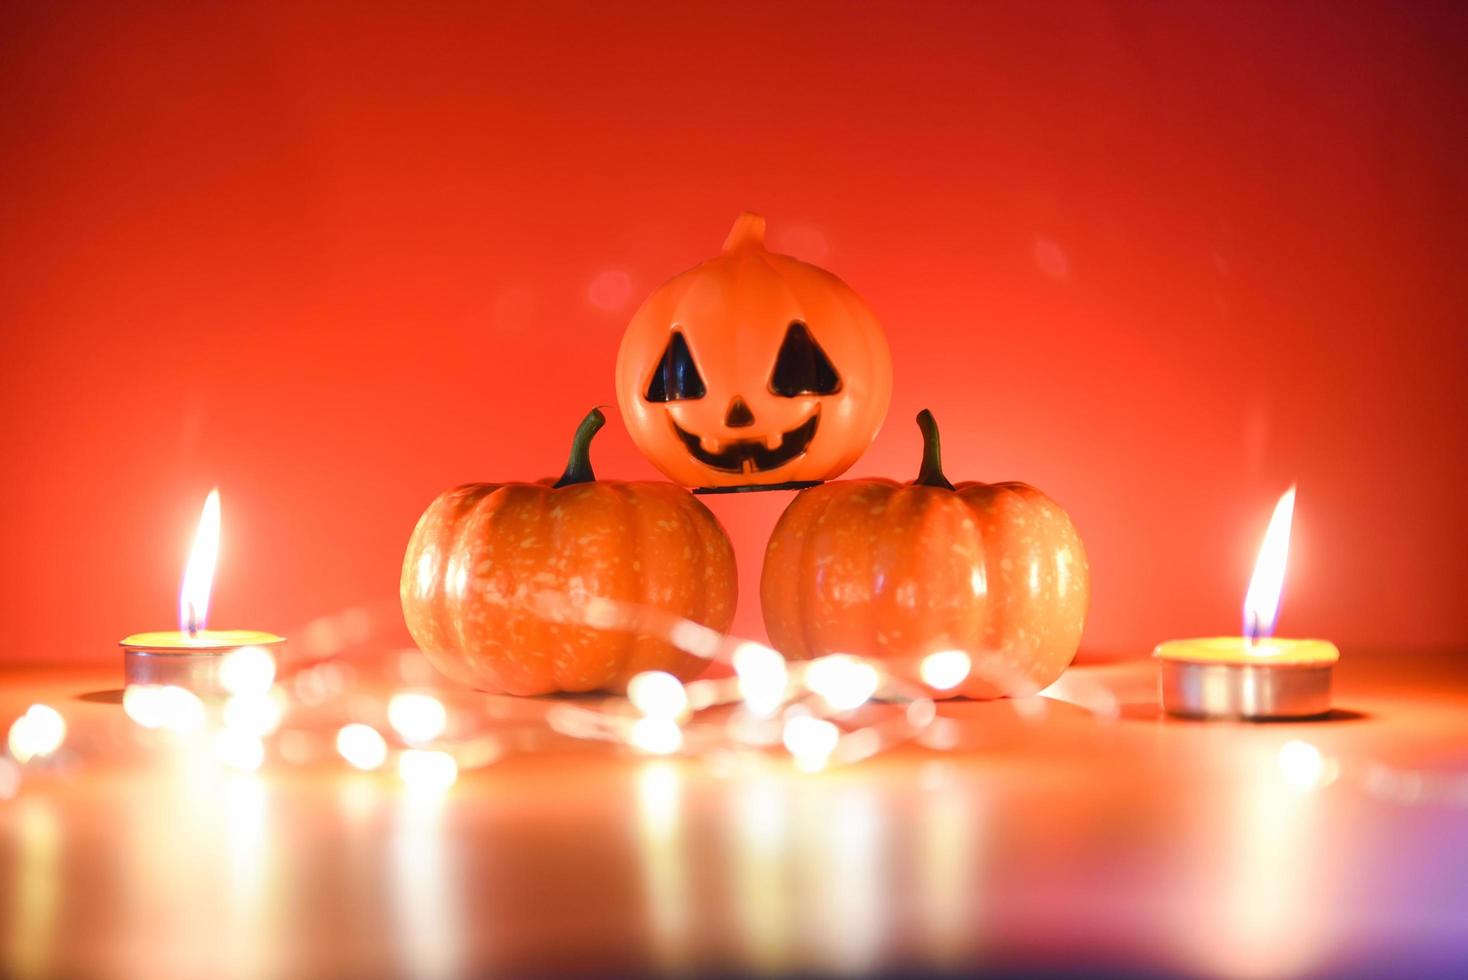 fond d'halloween aux chandelles orange décoré vacances concept festif - grimaces jack o lantern citrouille décorations d'halloween pour accessoires de fête objet avec bokeh aux chandelles photo